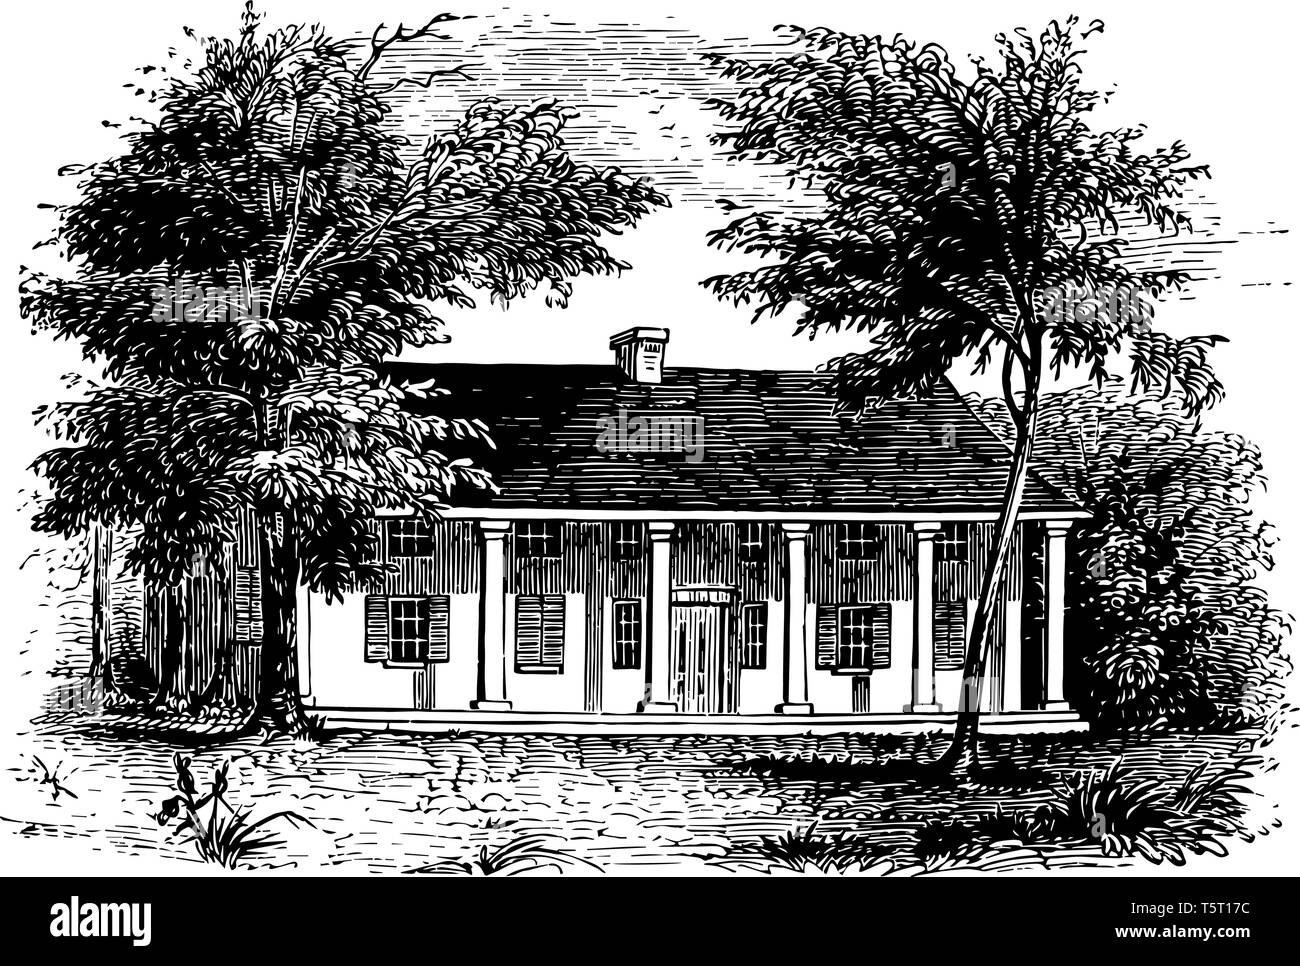 Allgemeine Schuylers Haus im Jahr 1777 erbaut, von der Britischen Armee während des Amerikanischen Unabhängigkeitskrieges vintage Zeichnung belegt. Stock Vektor